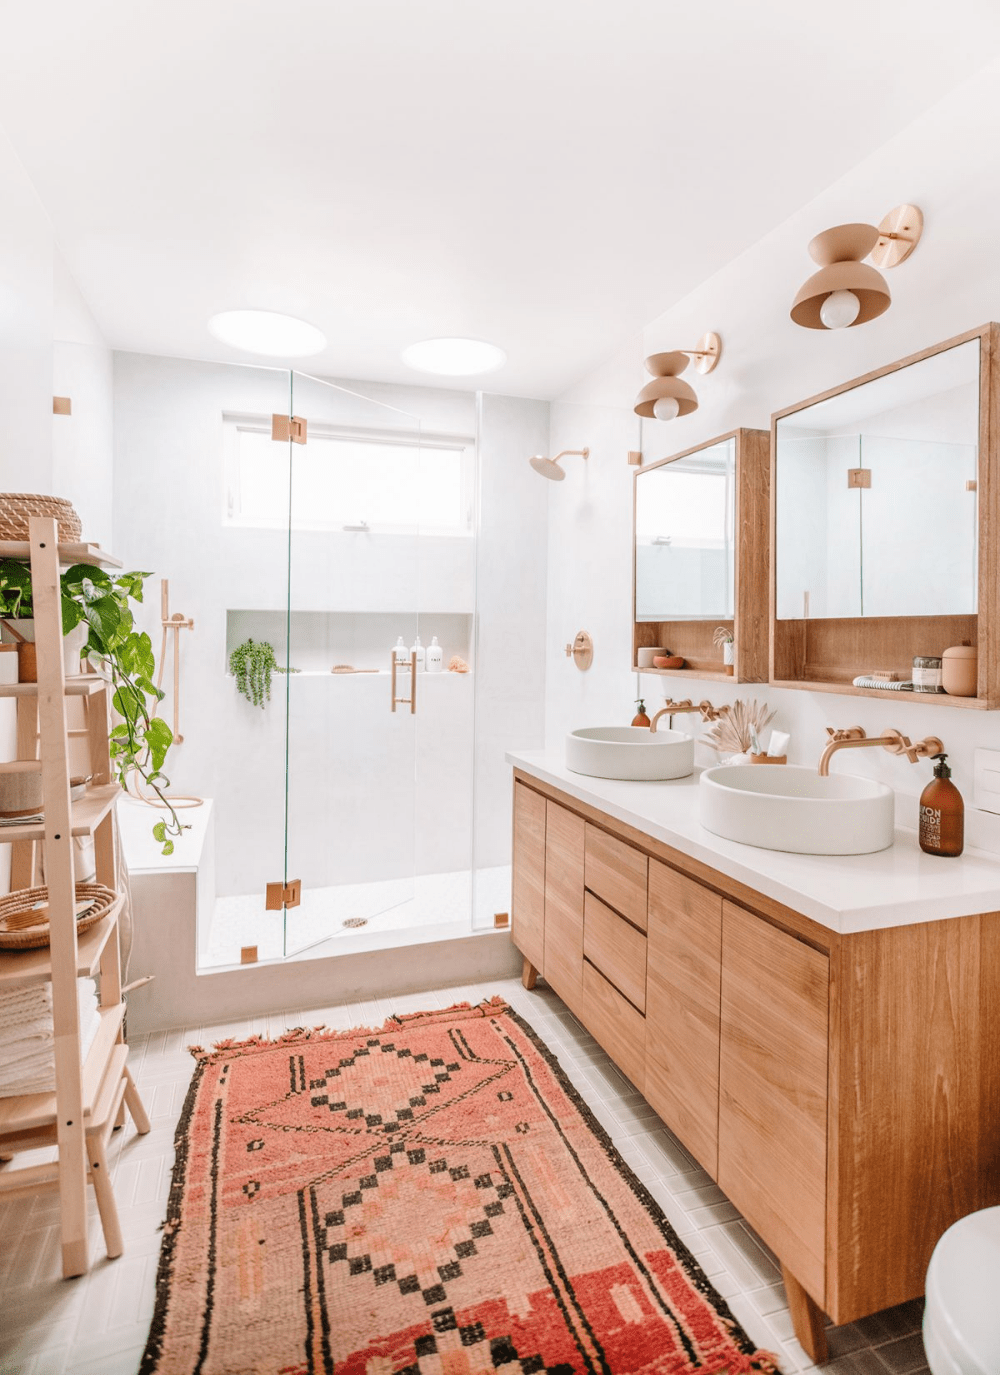 Chỉ với hai tông màu trắng và nâu gỗ nhưng phòng tắm vẫn toát lên nét hiện đại, thanh lịch, sang trọng đến lạ kỳ.